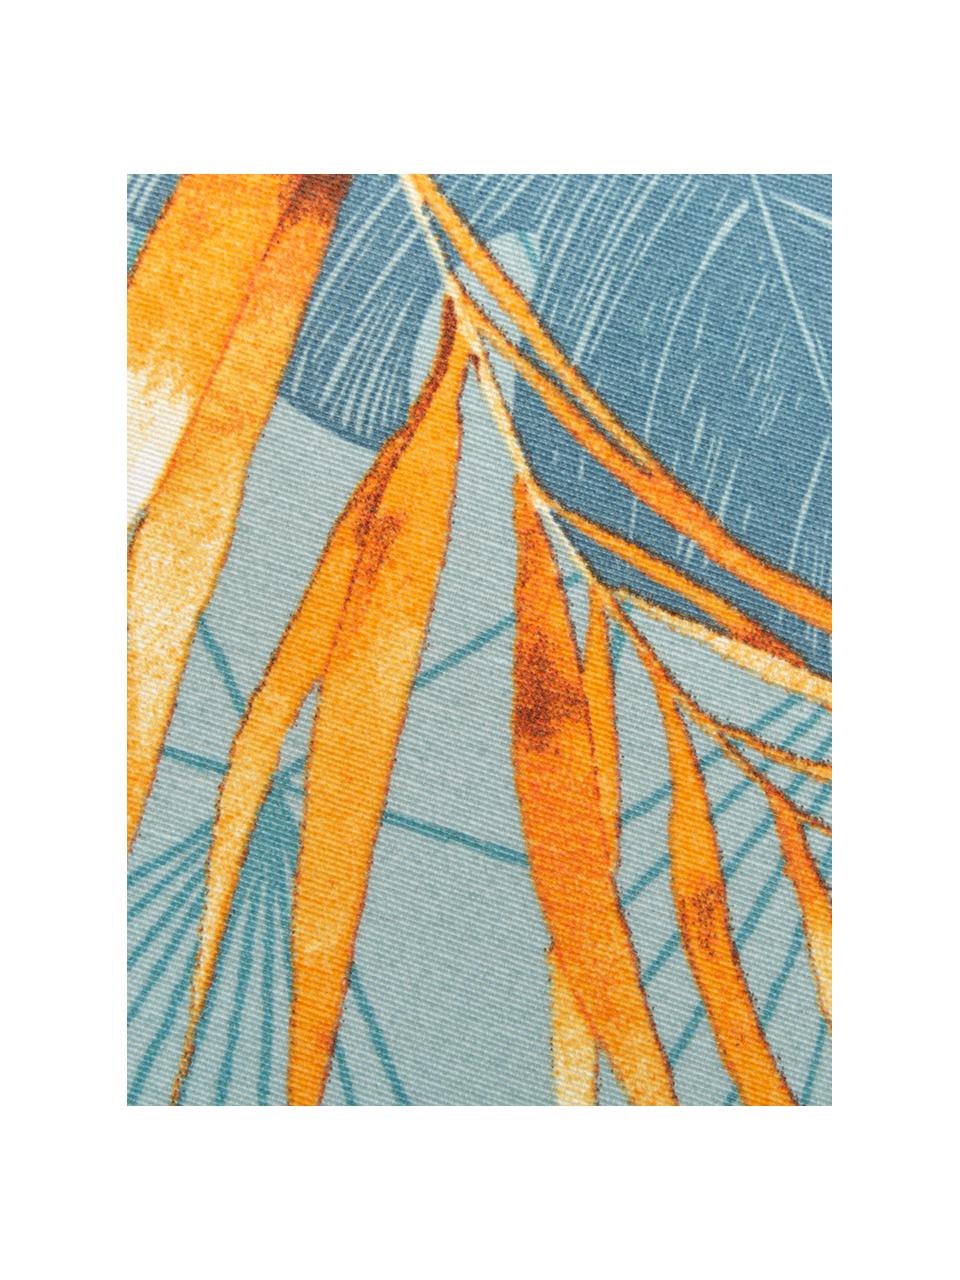 Coussin pour banc imprimé tropical Dotan, Bleu ciel, bleu, orange